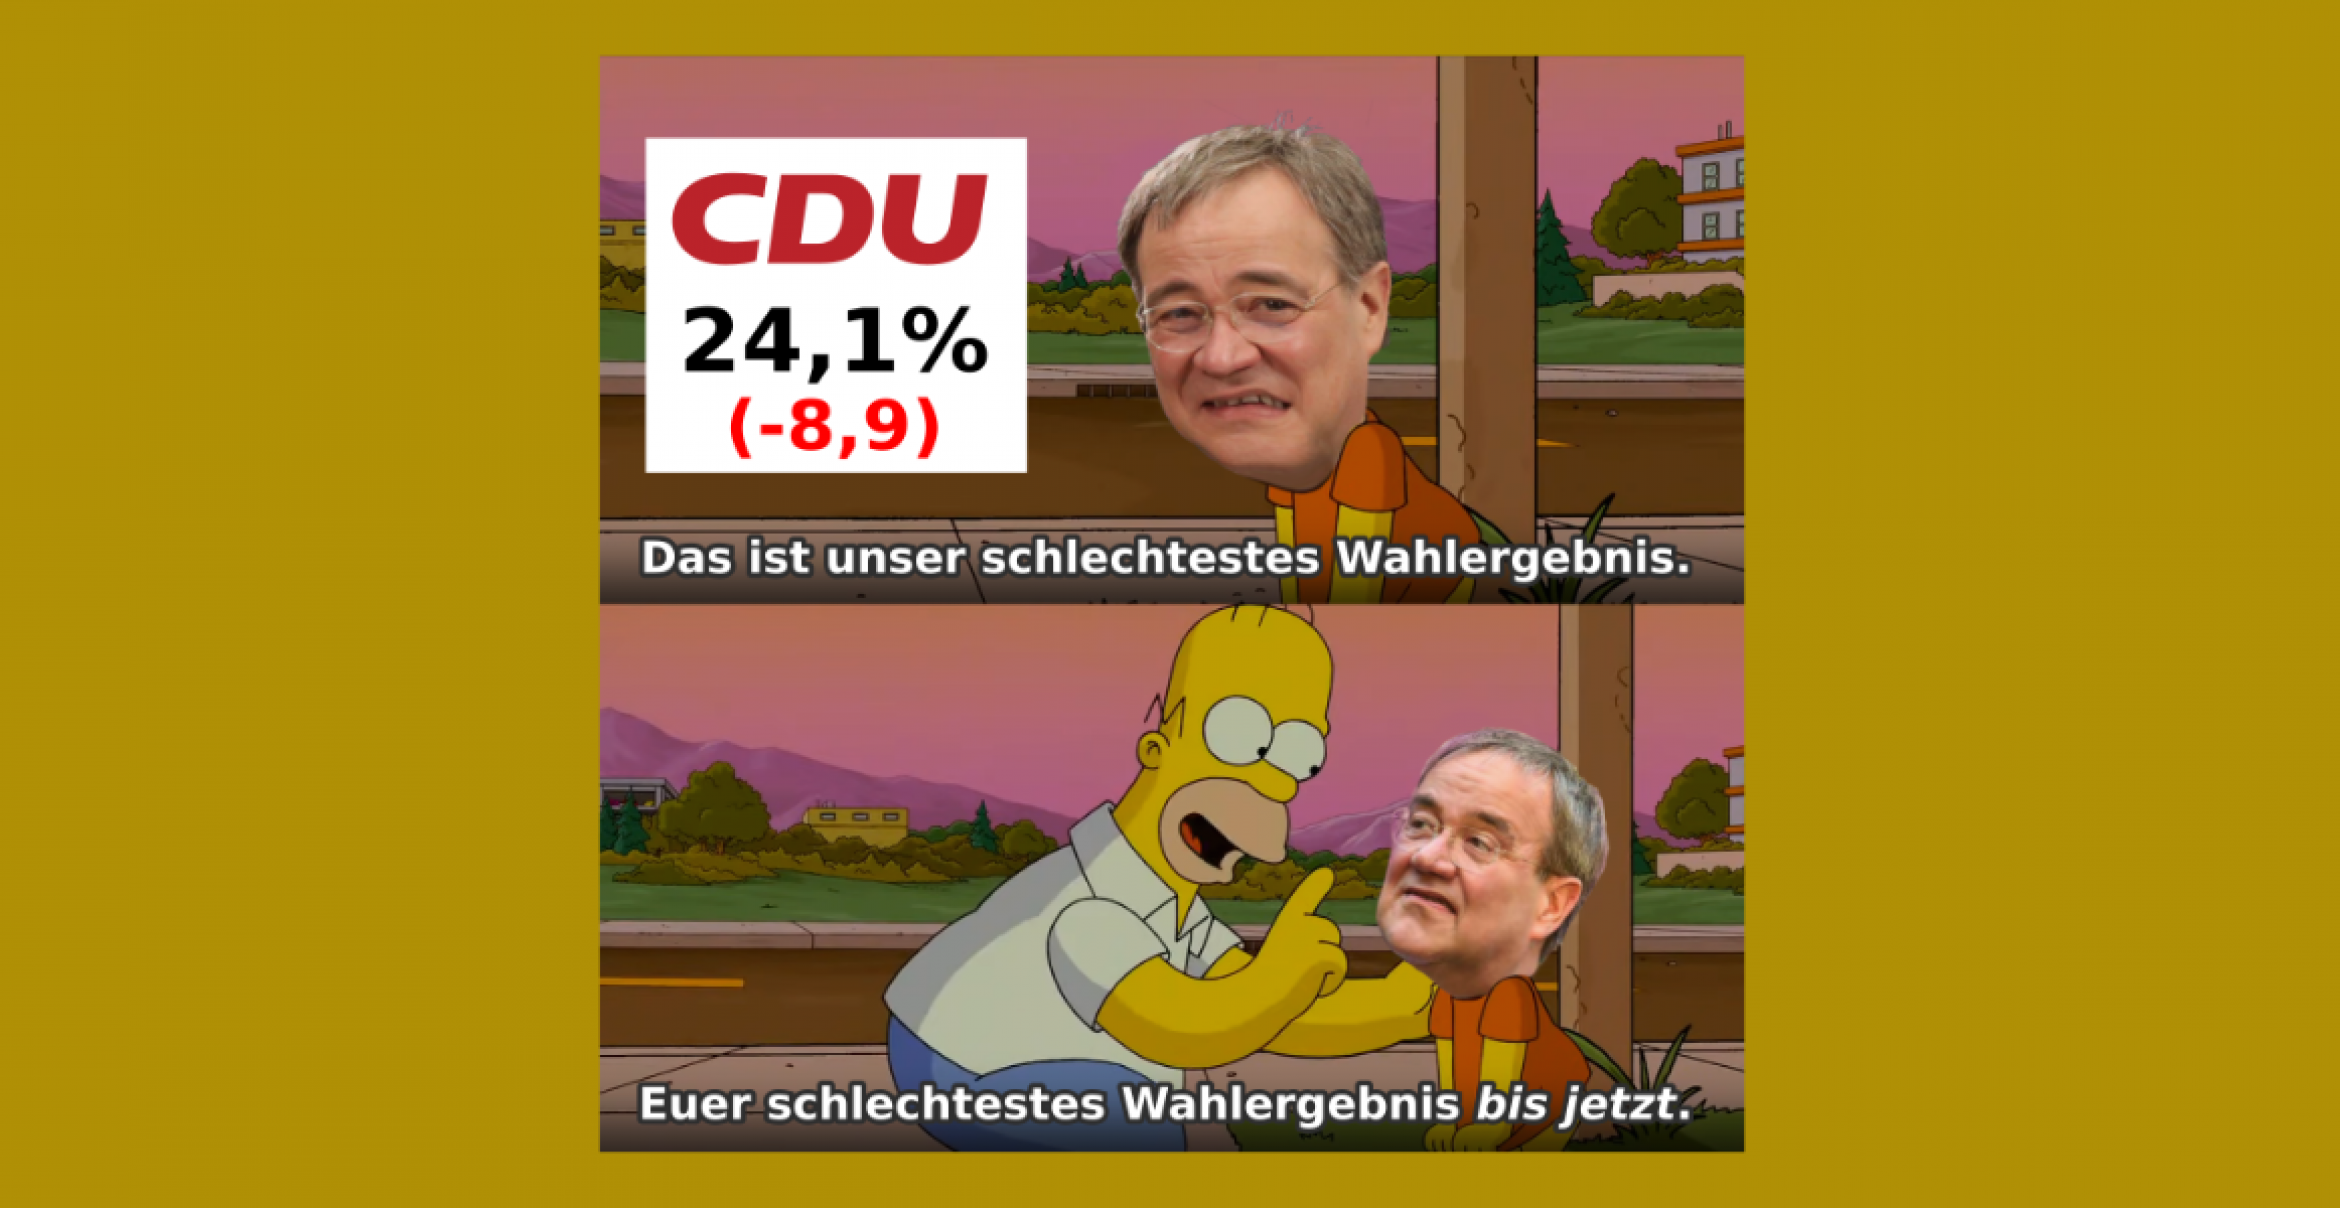 Das sind die lustigsten Memes zur Bundestagswahl 2021